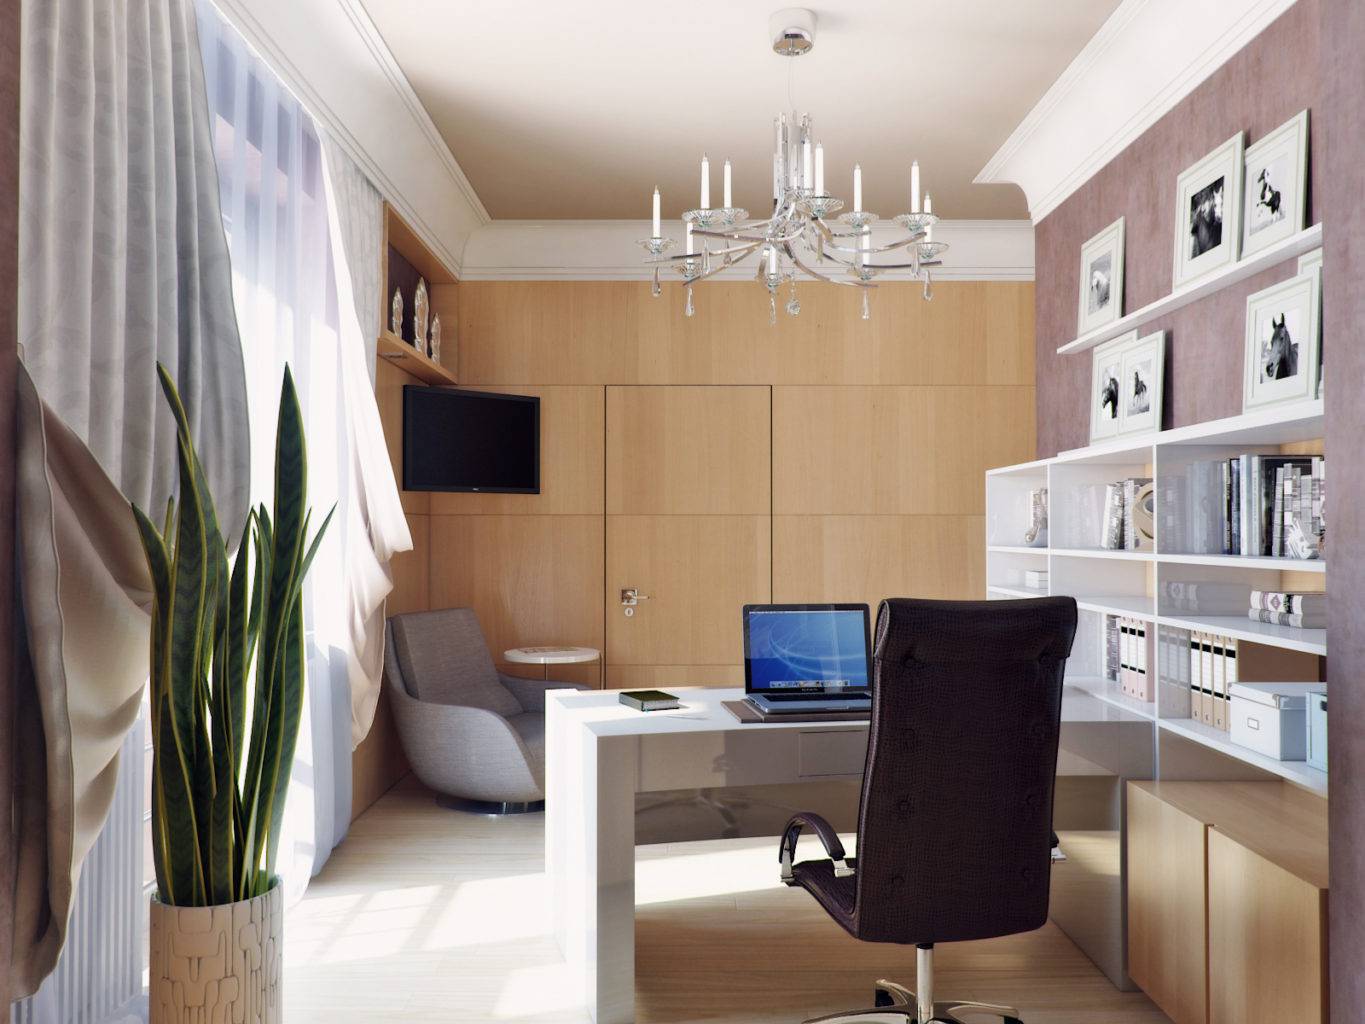 Дизайн кабинета: варианты расположения, идеи обустройства, выбор мебели, цвета, стиля